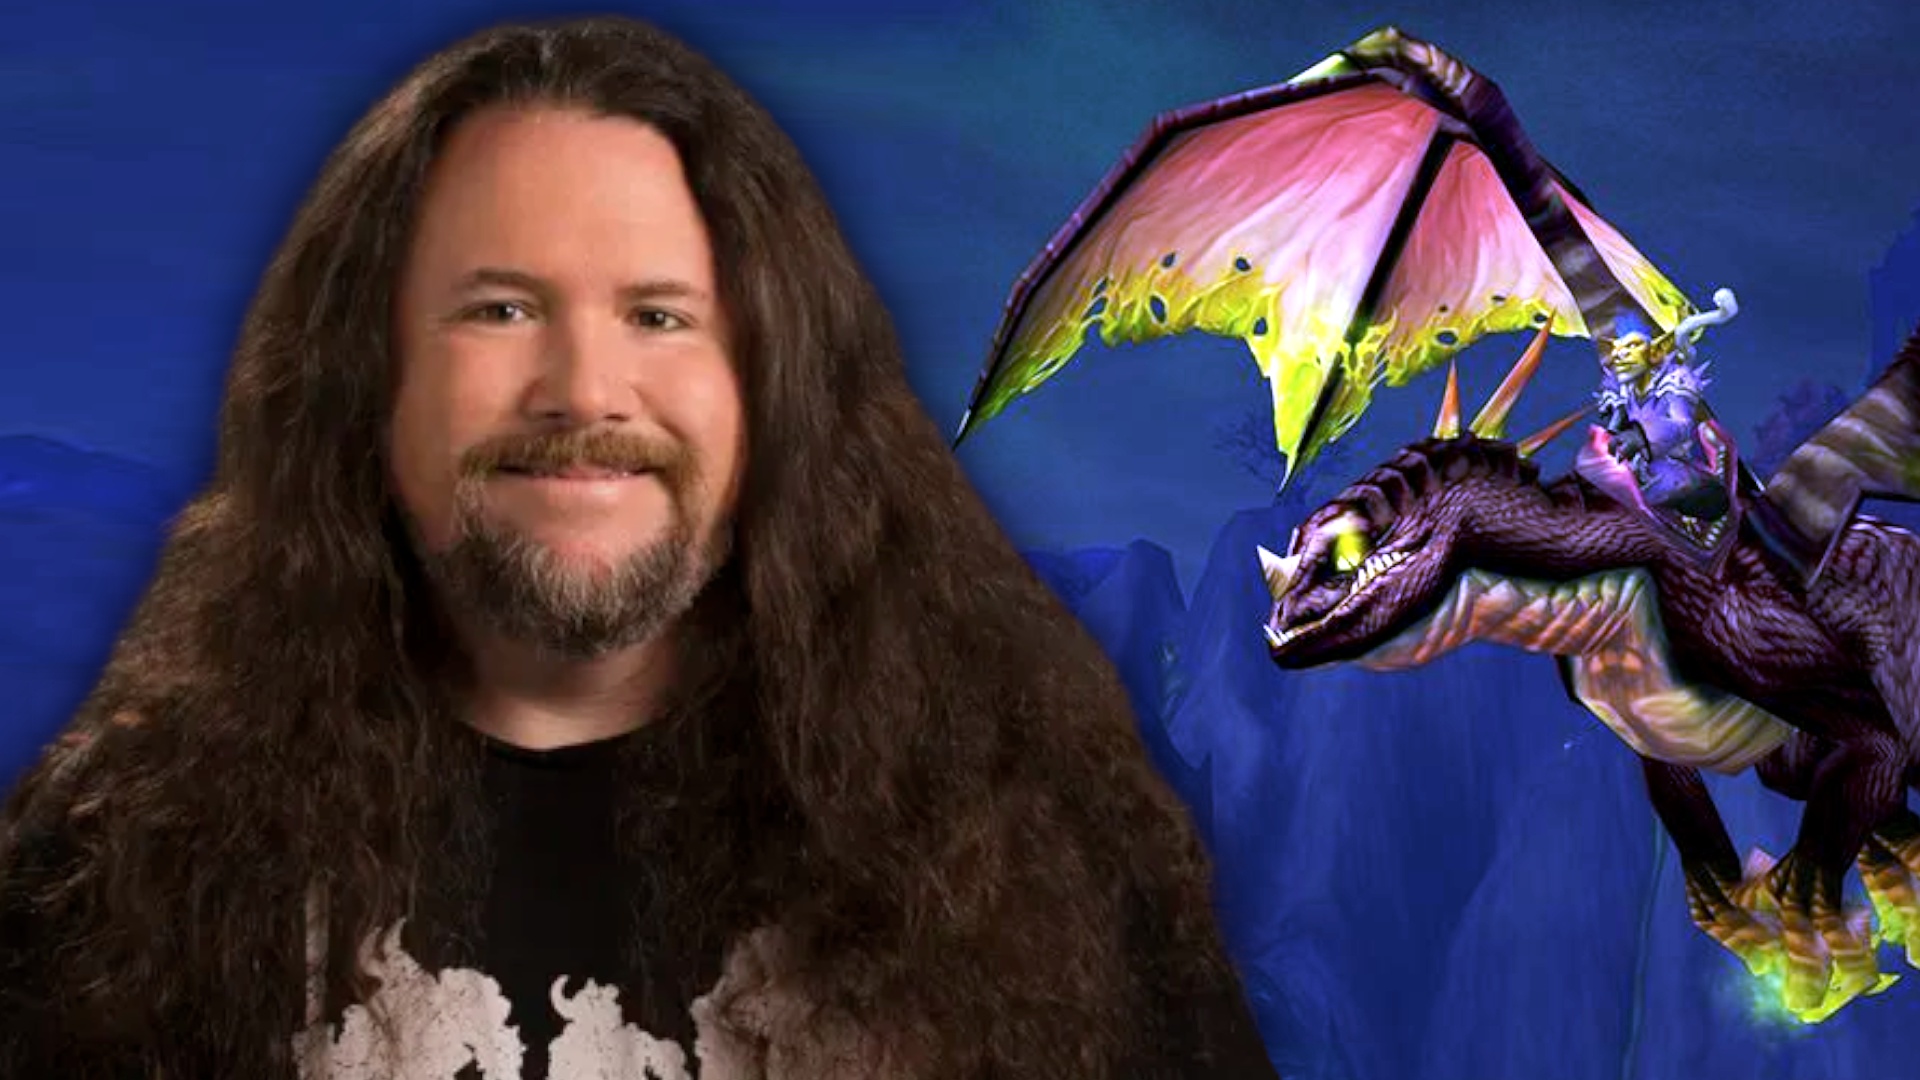 #Ohne ihn sähen Warcraft, Diablo & Co. ganz anders aus: Legendärer Entwickler verlässt Blizzard